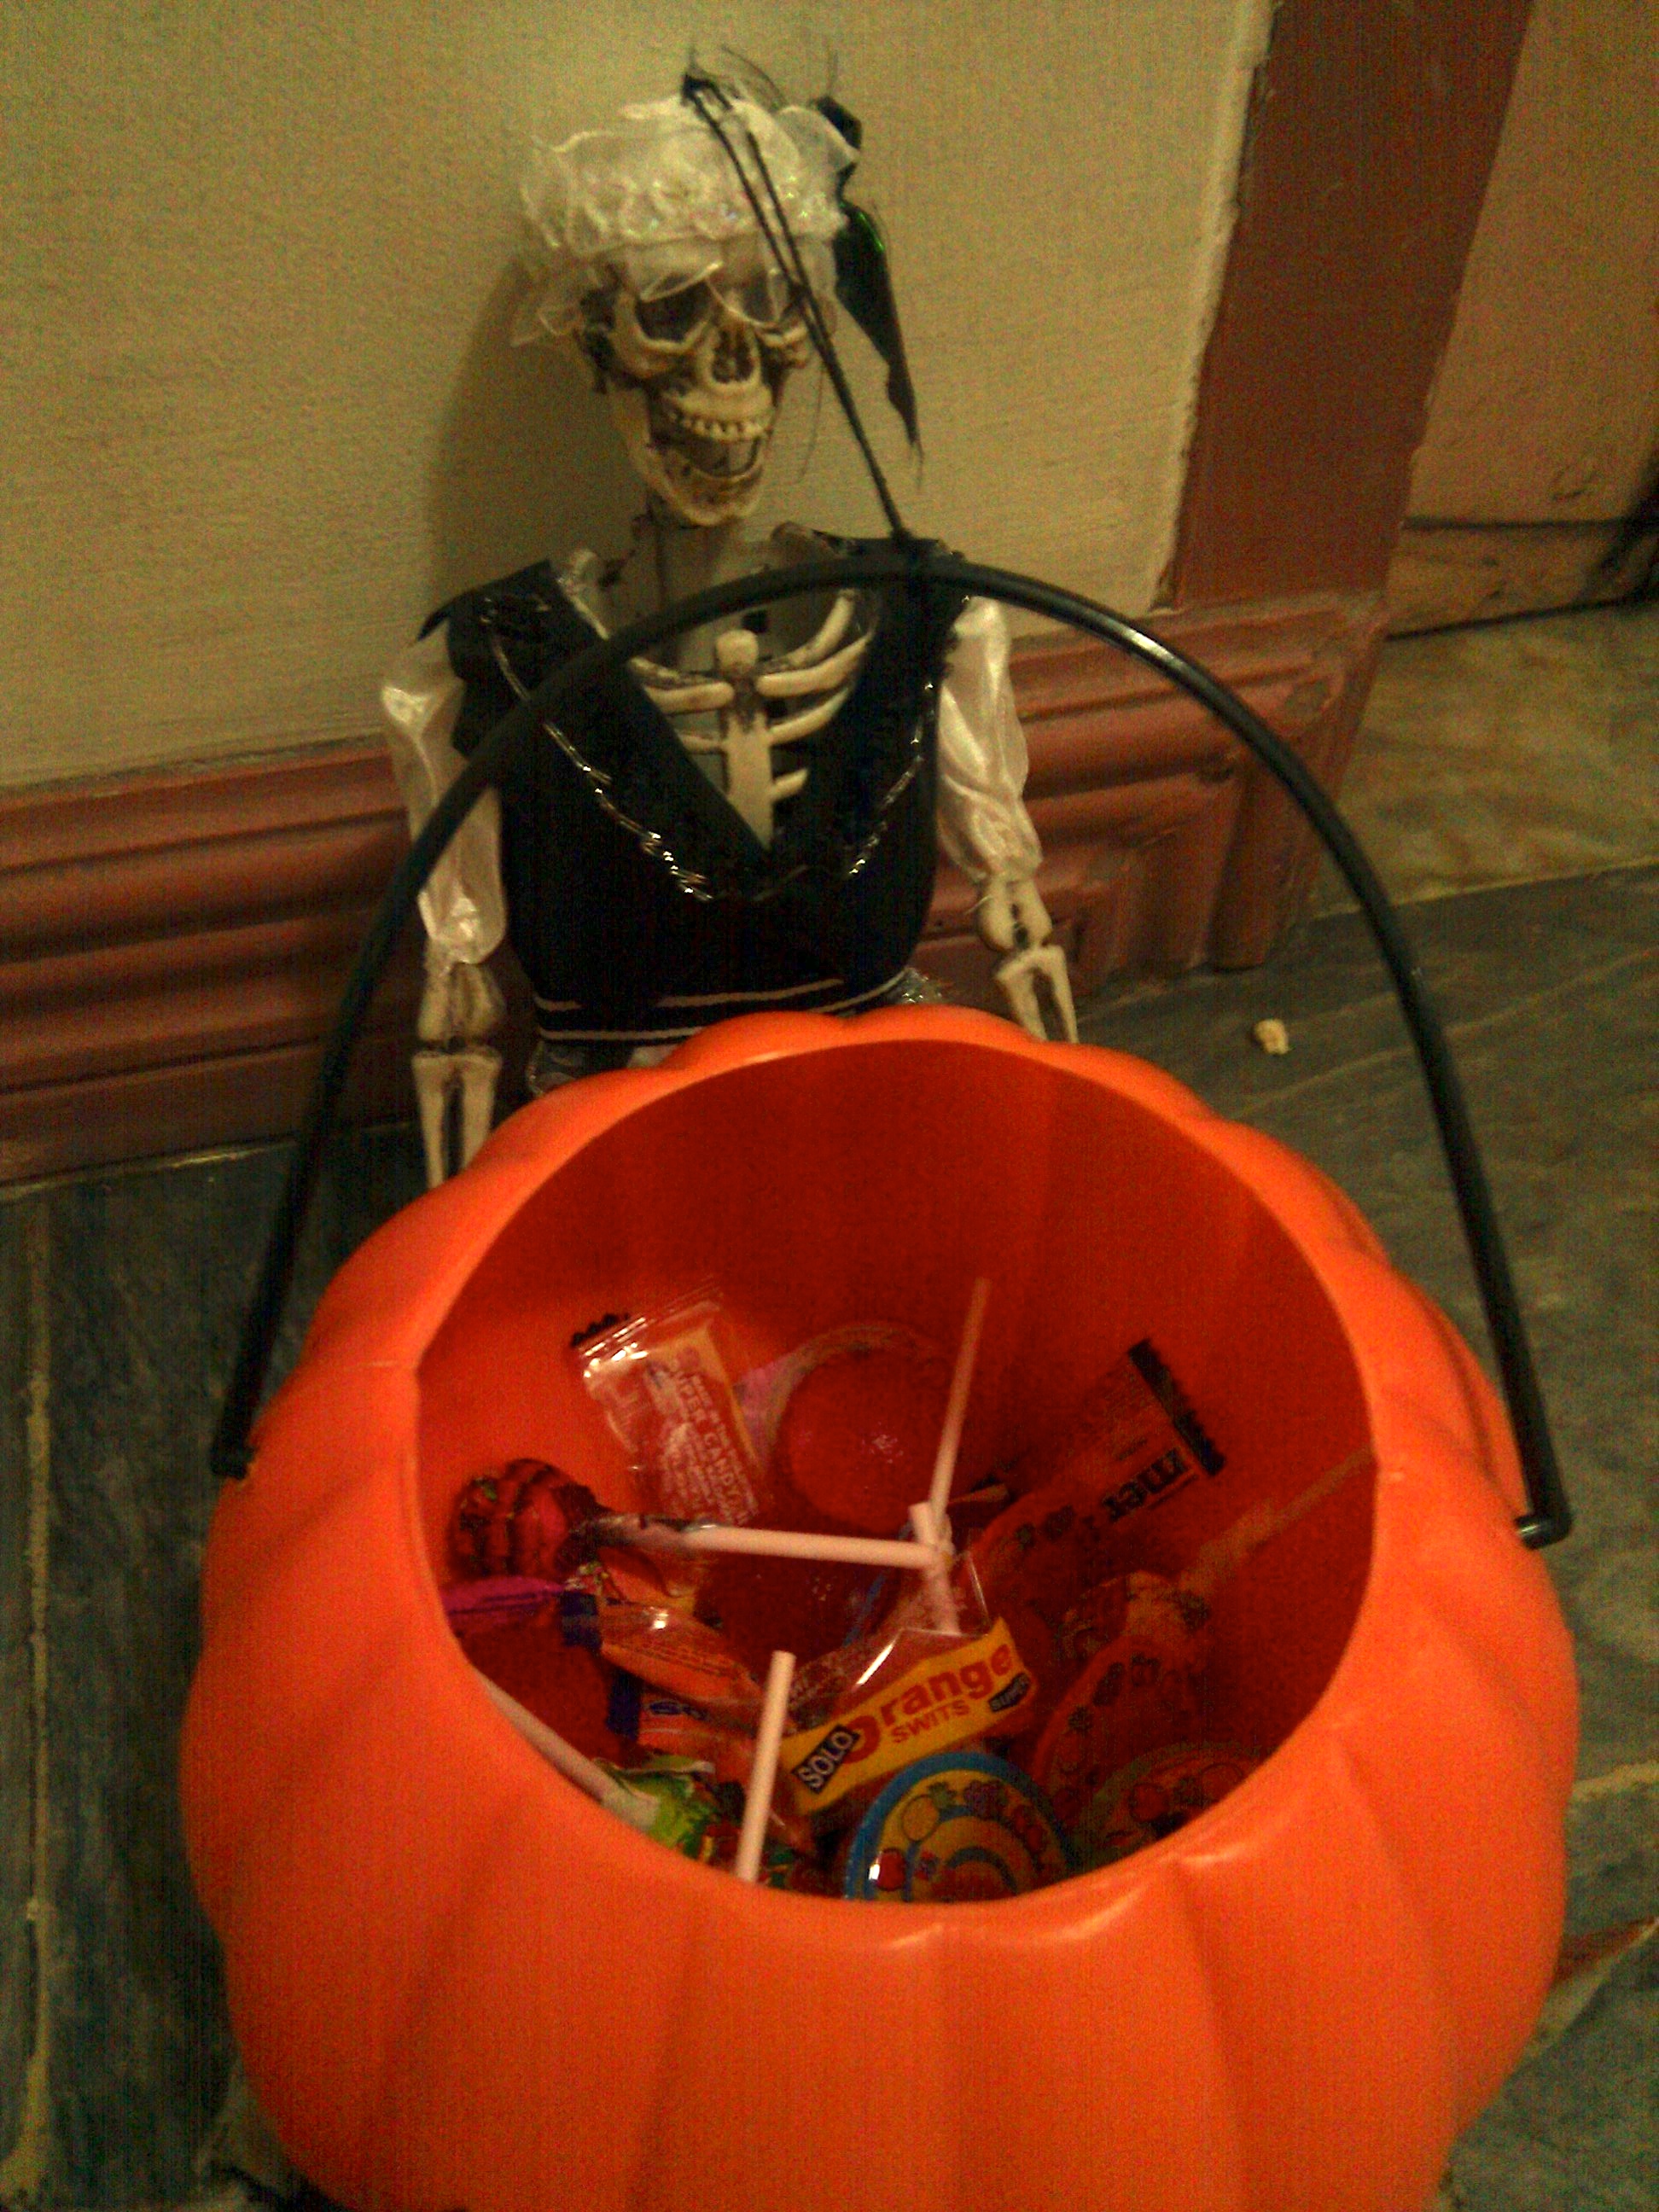 cover-image Skeleton with pumpkin basket